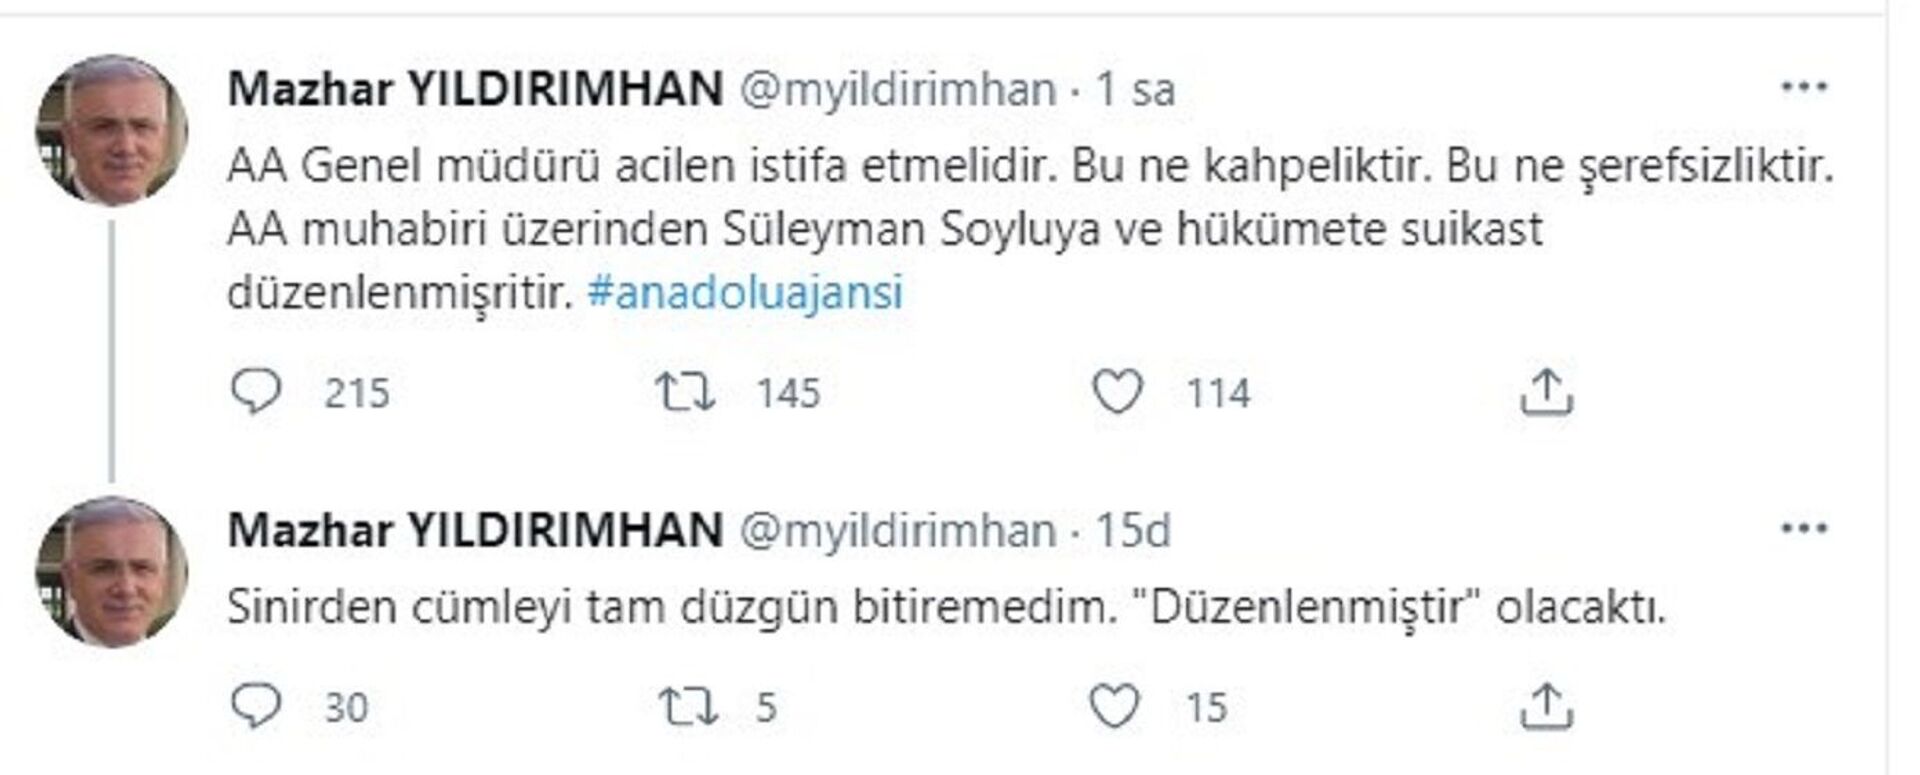 AA Muhabiri Musab Turan'dan ‘Sedat Peker’ sorusu: AK Parti Süleyman Soylu’dan daha mı küçük? - Sputnik Türkiye, 1920, 21.05.2021